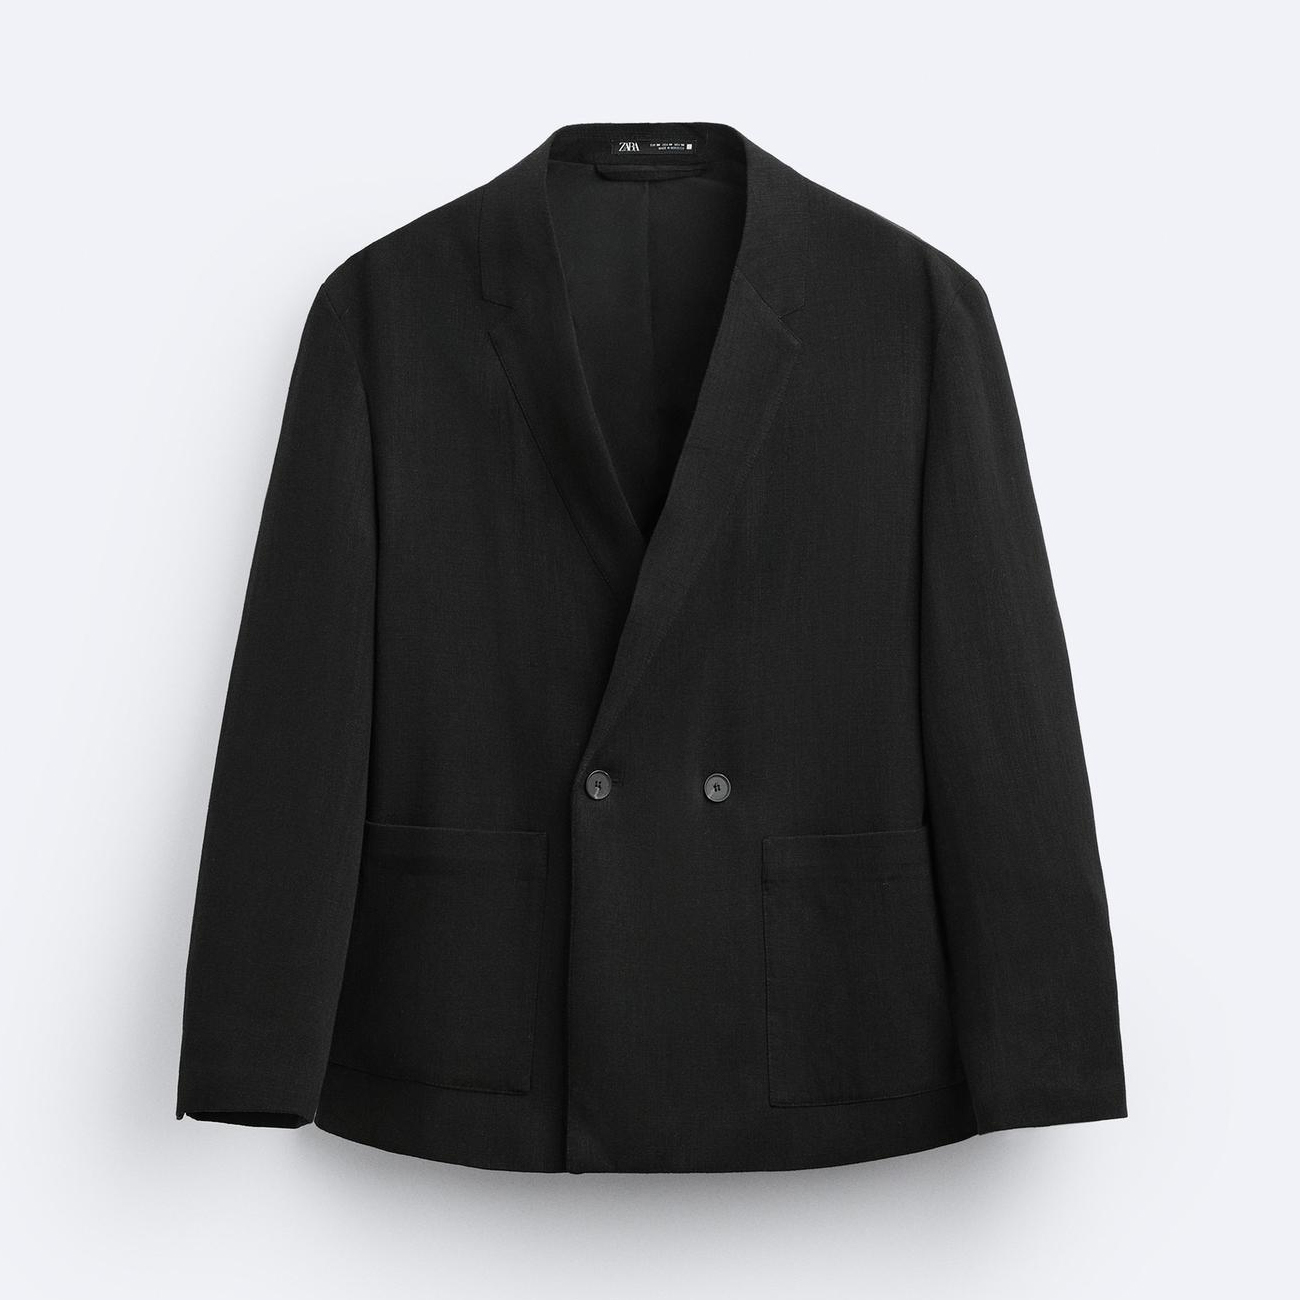 Пиджак Zara Double-breasted, черный пиджак zara черный 40 размер